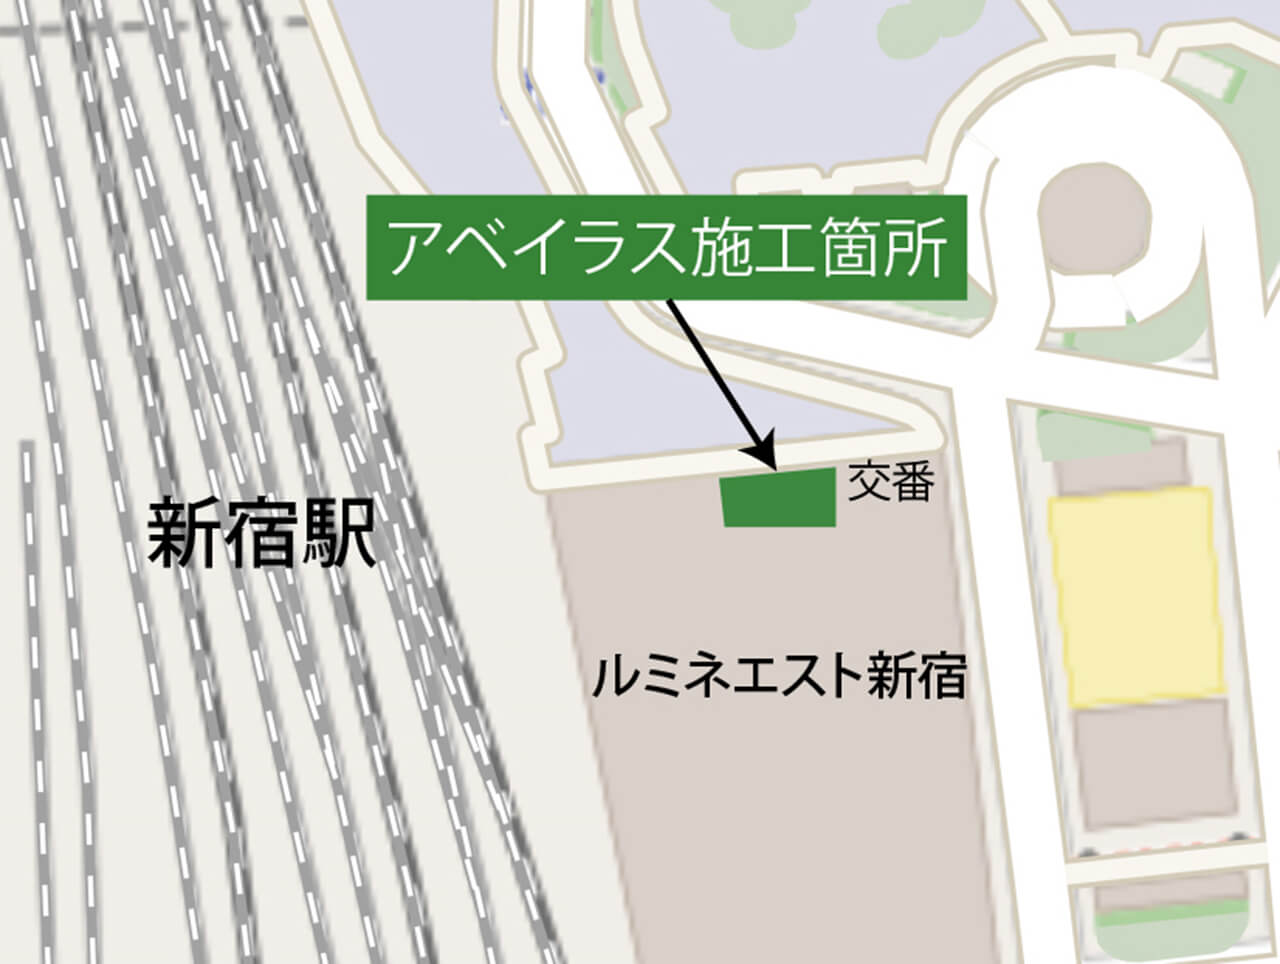 屋外からJR東日本新宿駅東口へ繋がる階段手前の床に使用されているハイブリッドストーン アベイラス アンプロップの施工エリアを示した地図